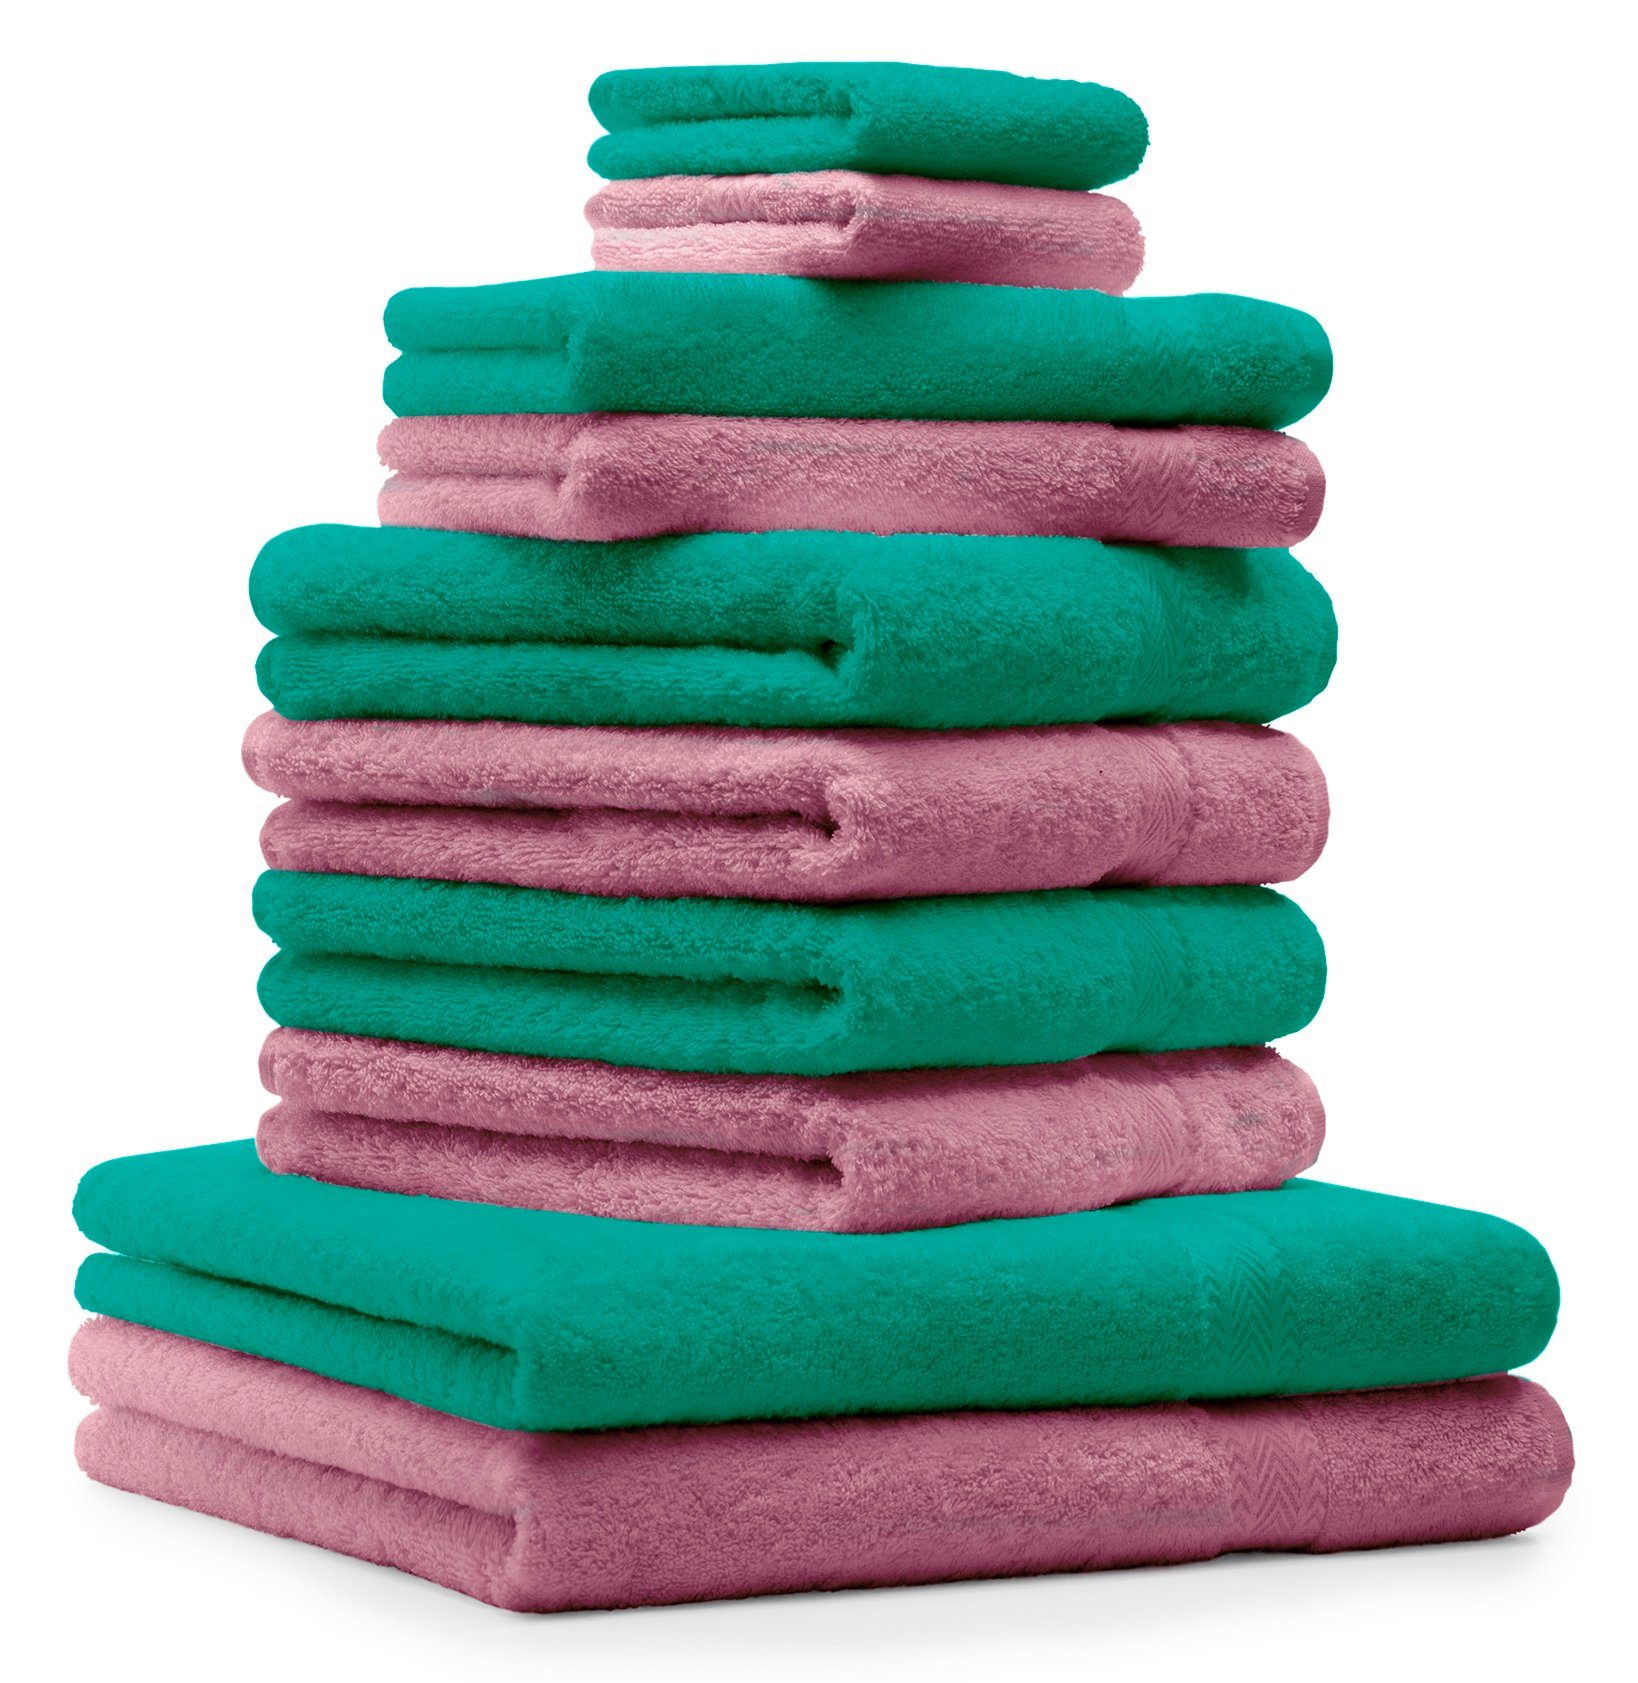 Handtücher 2 Waschhandschuhe Set 2 Handtuch 100% Altrosa, Baumwolle Grün 10-TLG. Baumwolle Premium Gästetücher 100% 4 Handtuch-Set Farbe Smaragd 2 Duschtücher & Betz